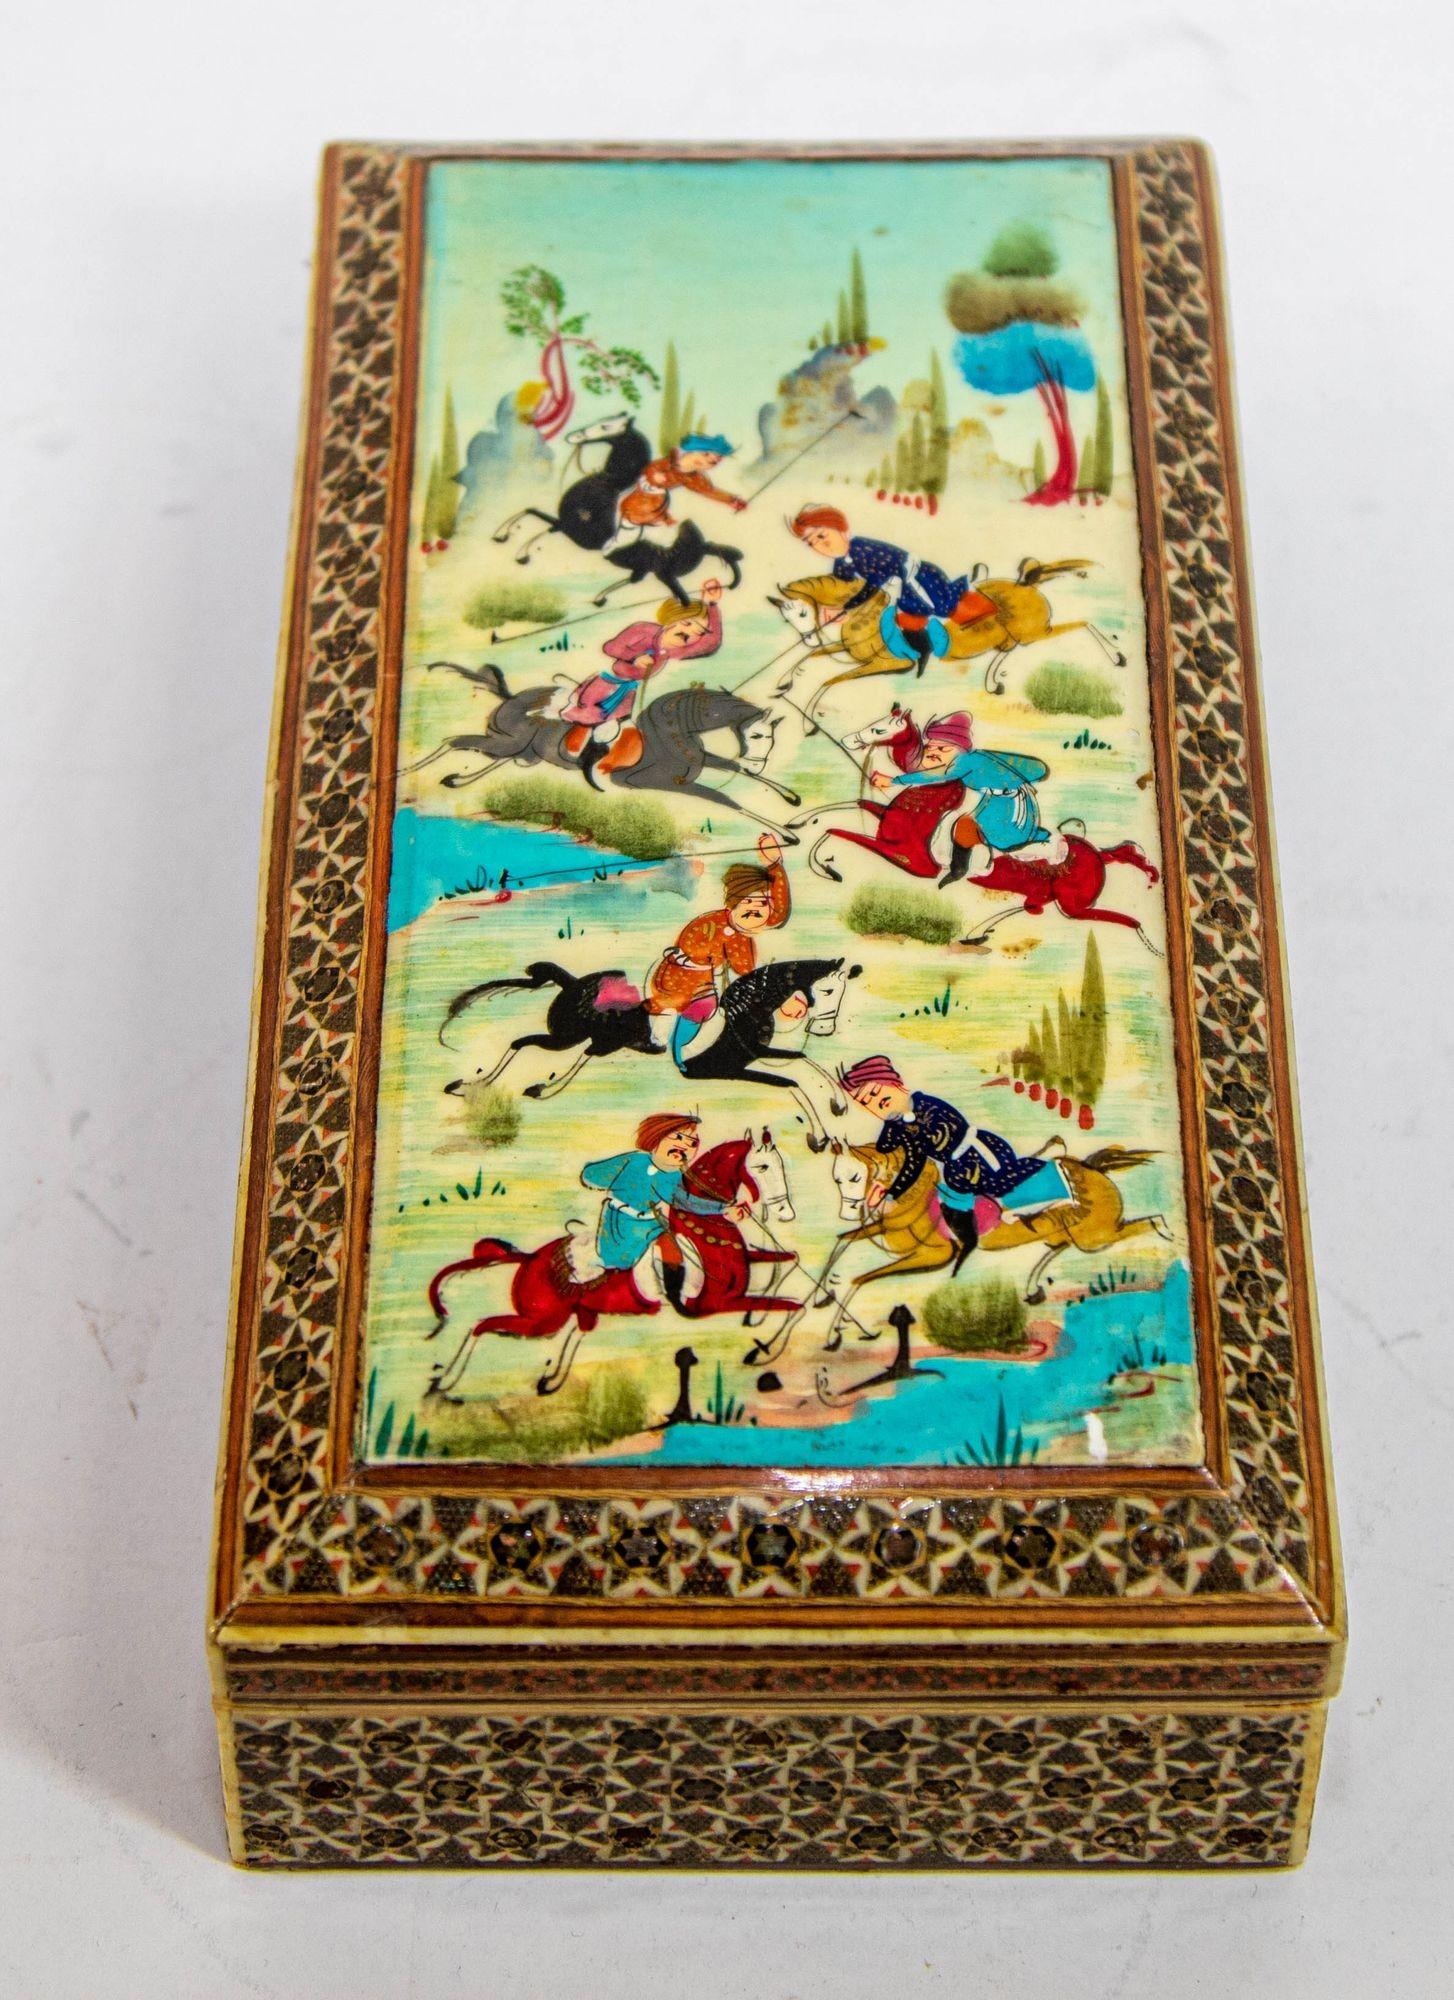 Feine antike große handgefertigte Vintage Intarsien Indo Persian Holz Intarsien Mikro Mosaik mit Miniatur handgemalte Szene.
Feine antike handgefertigte kostbare Box Mikro-Mosaik in geometrischem Design eingelegt und mit einer Miniatur islamischen